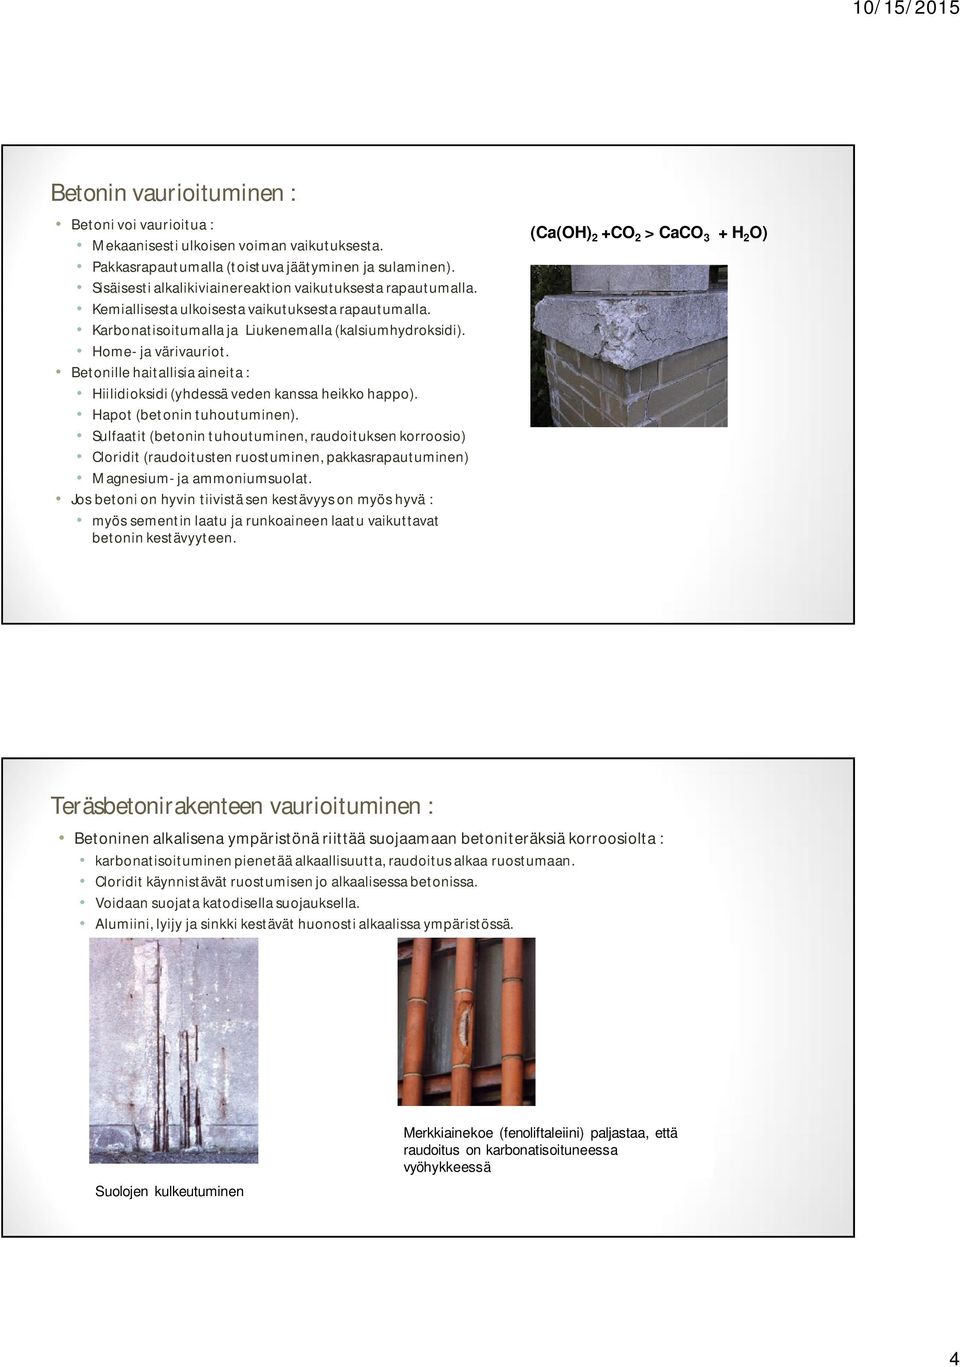 Betonille haitallisia aineita : Hiilidioksidi (yhdessä veden kanssa heikko happo). Hapot (betonin tuhoutuminen).